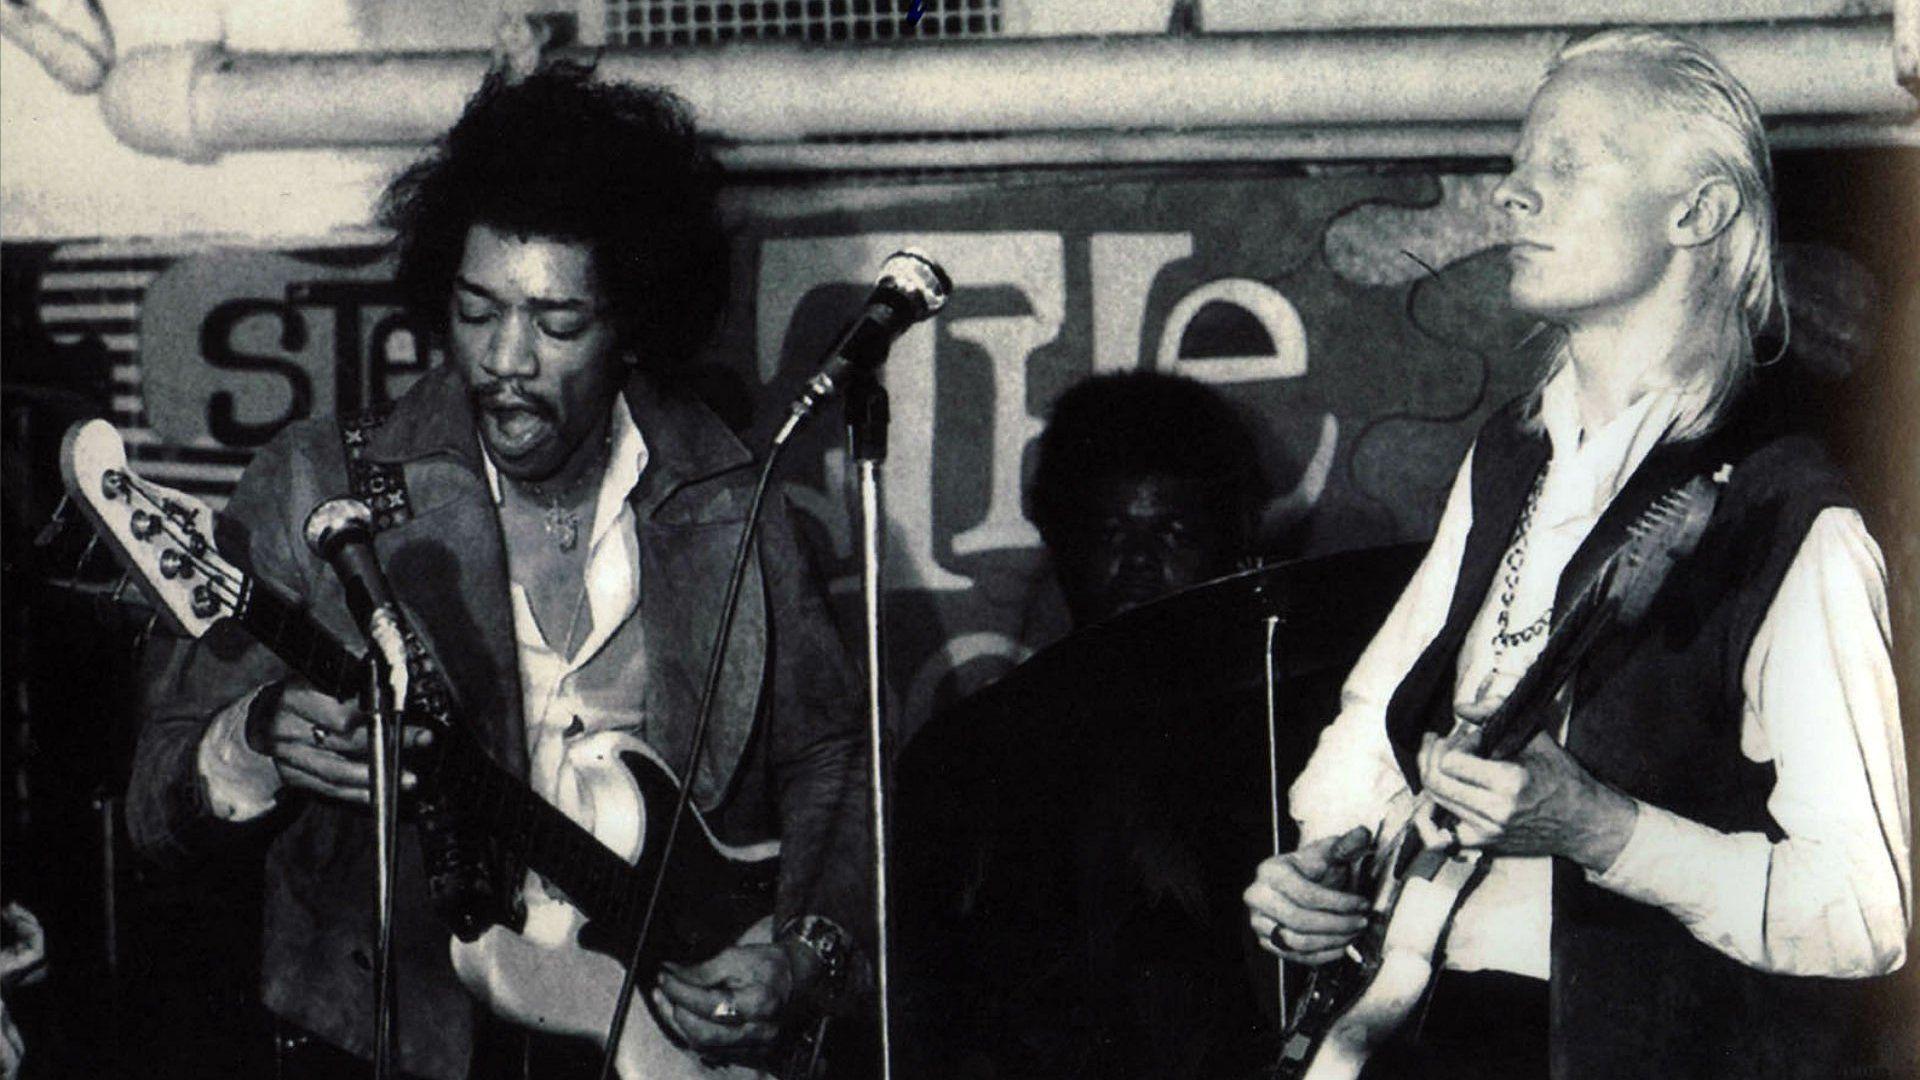 Download Free Jimi Hendrix Wallpaper